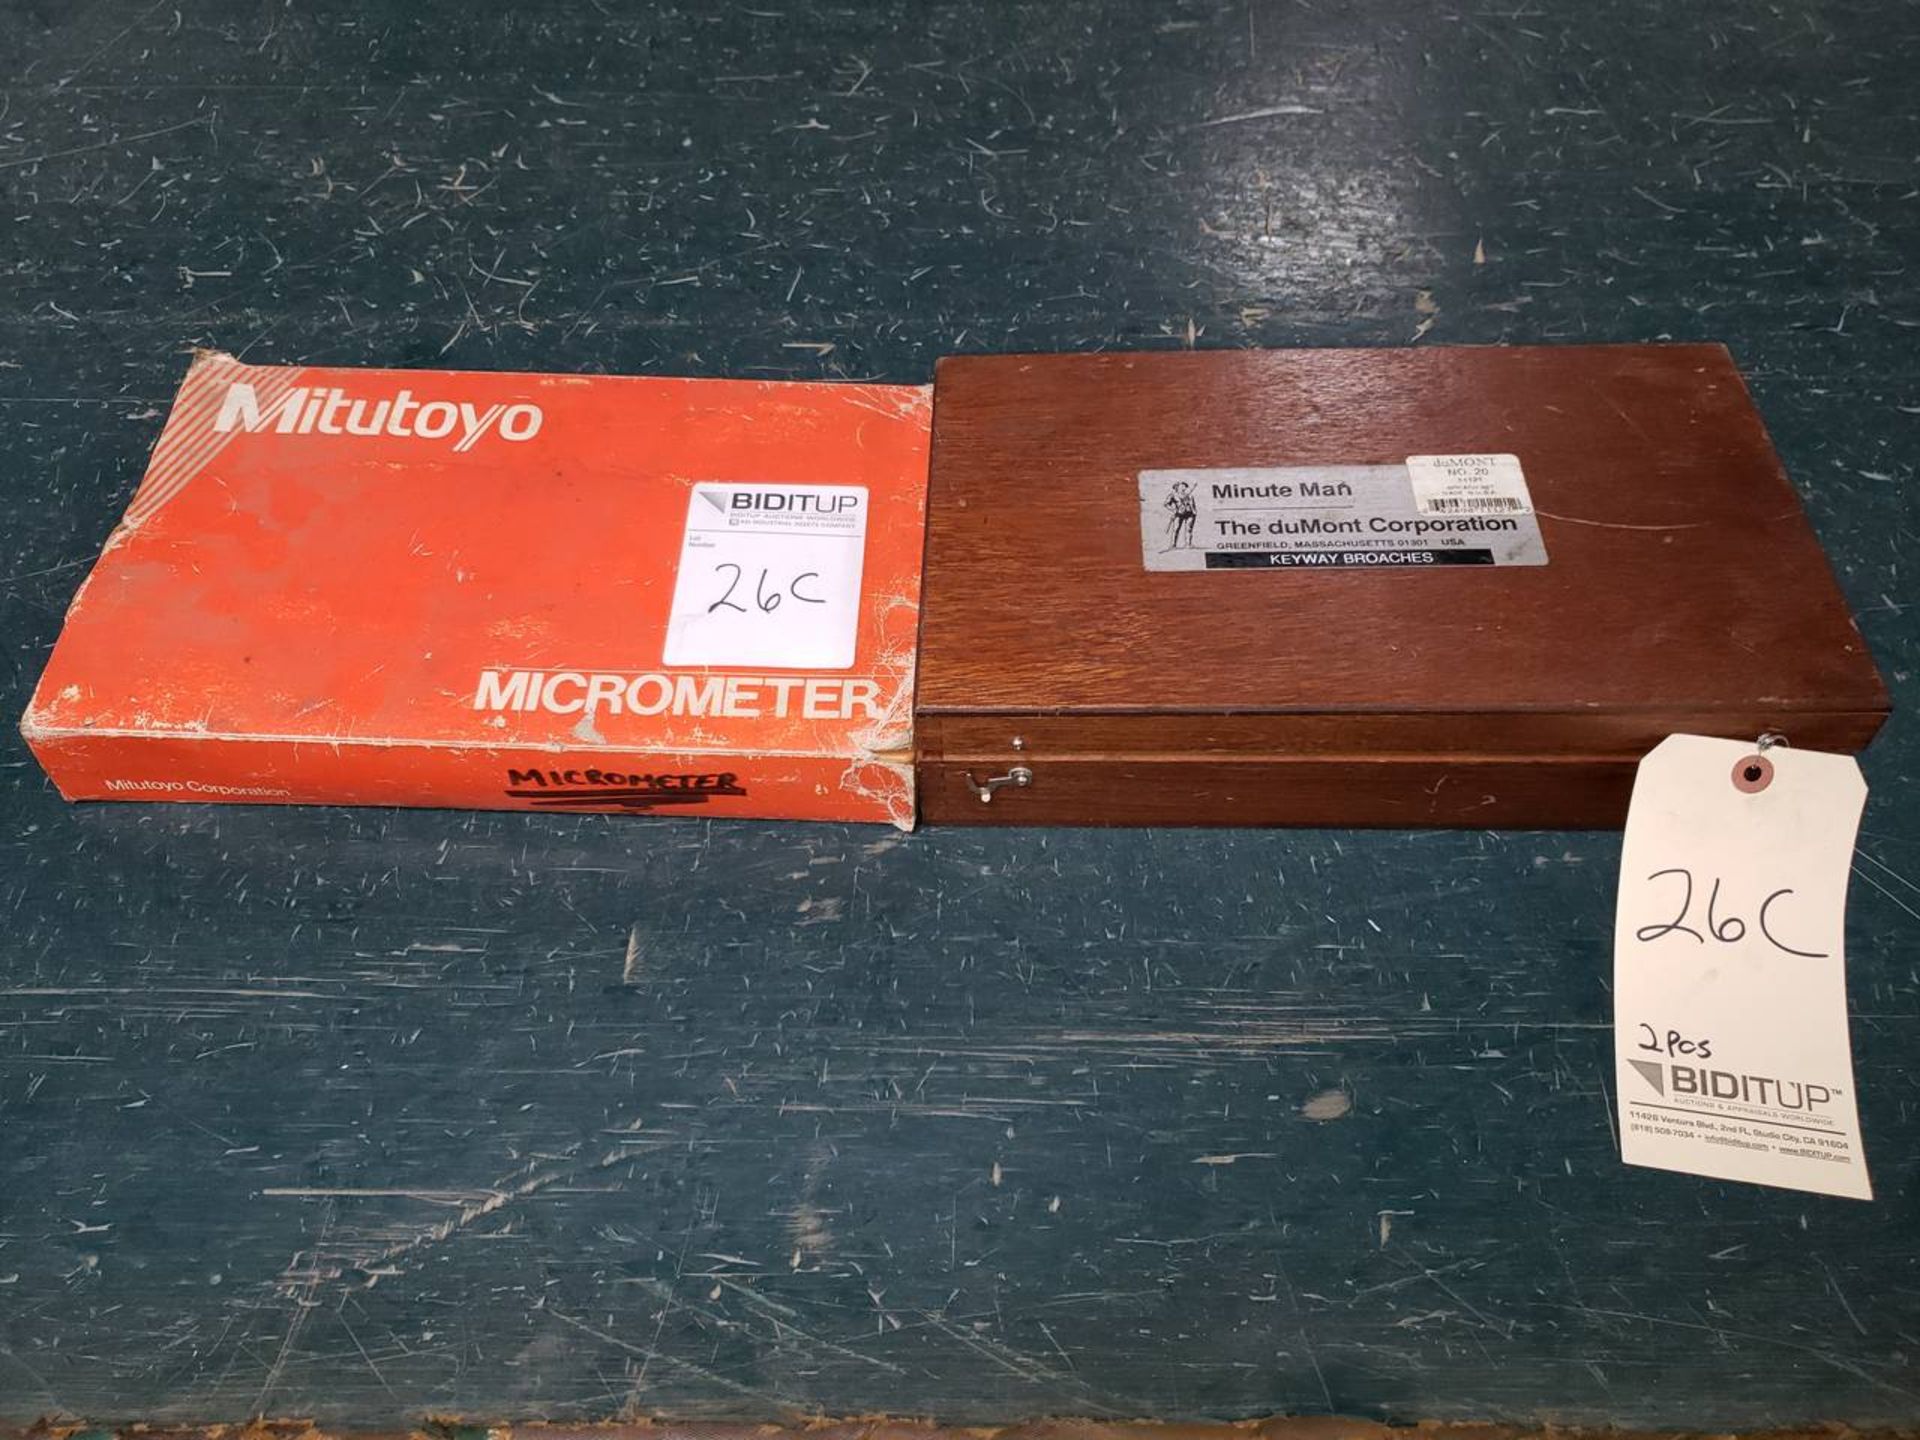 duMont/ Mitutoyo 11121/ 141-133 (1) duMONT #20 Keyway Broach Set & (1) Mitutoyo Micrometer